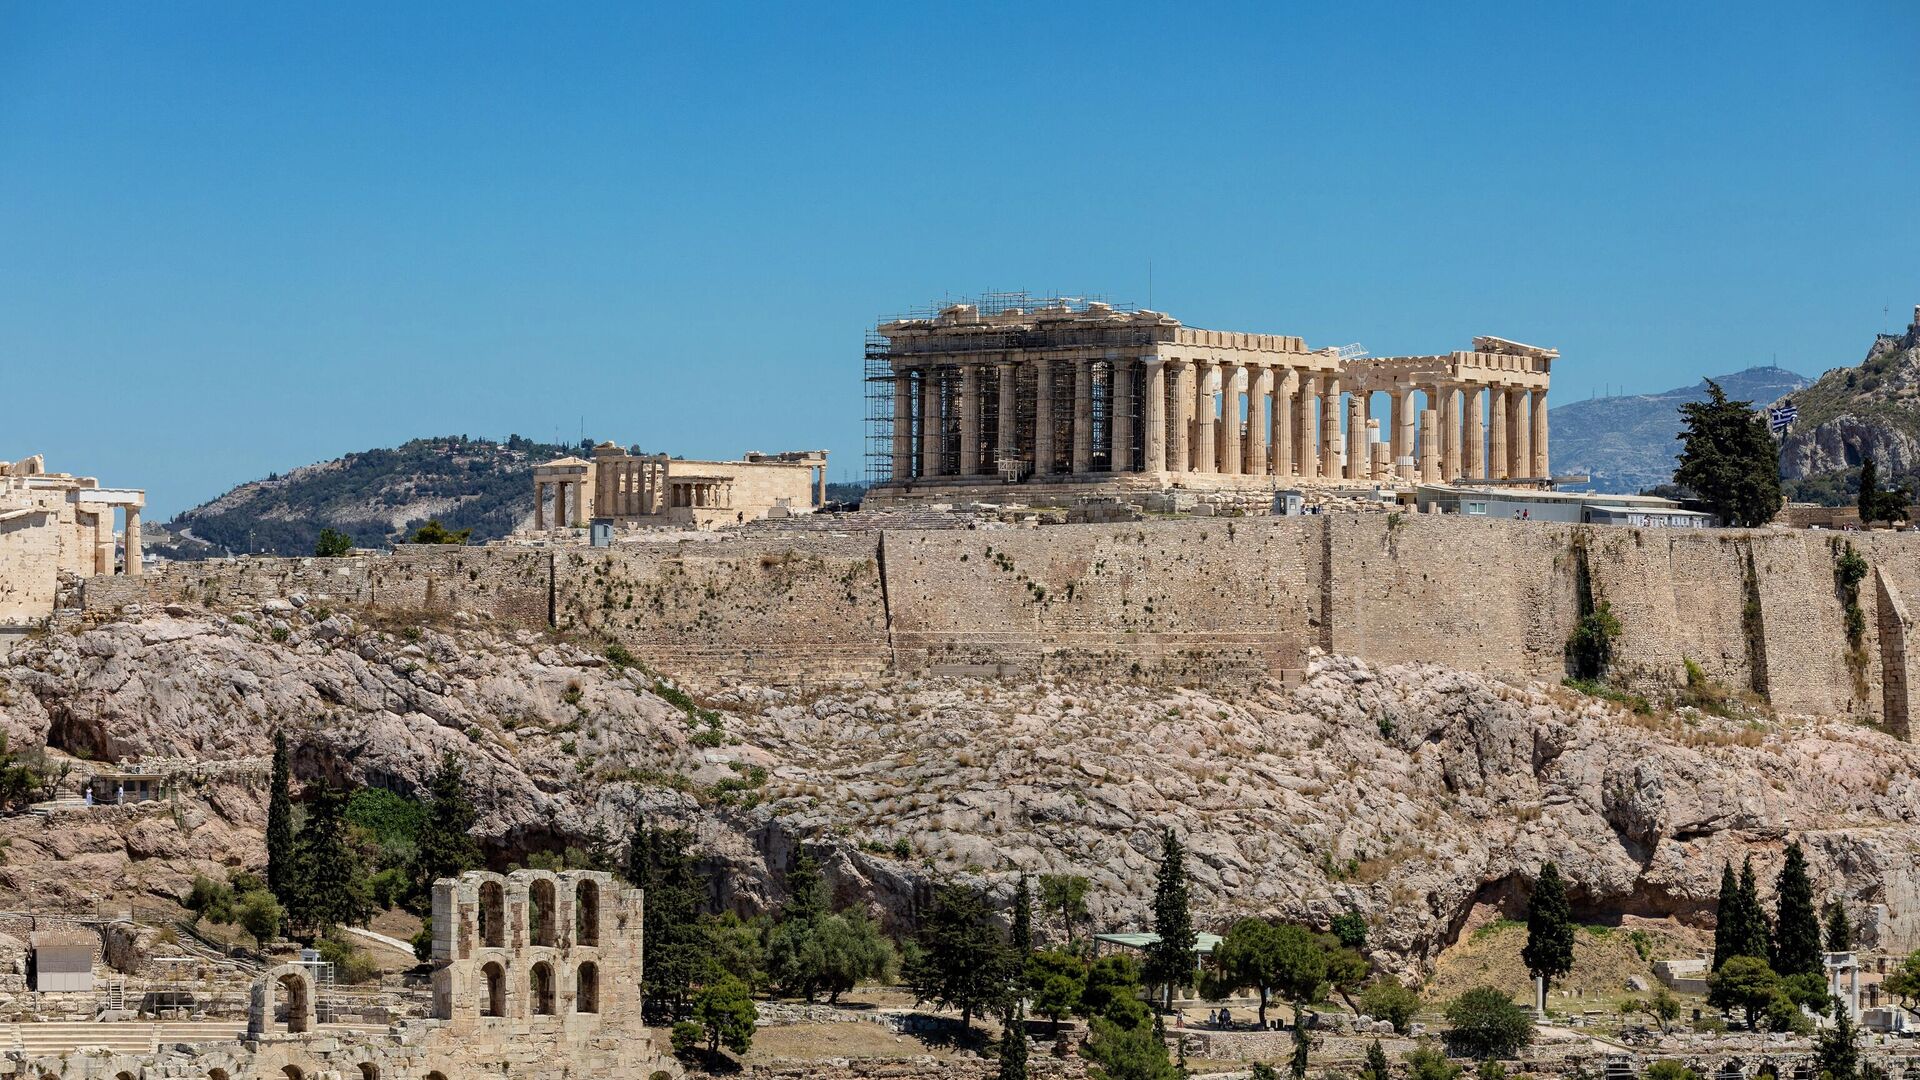 Парфенон - памятник античной архитектуры, древнегреческий храм, расположенный на афинском Акрополе - РИА Новости, 1920, 12.06.2021